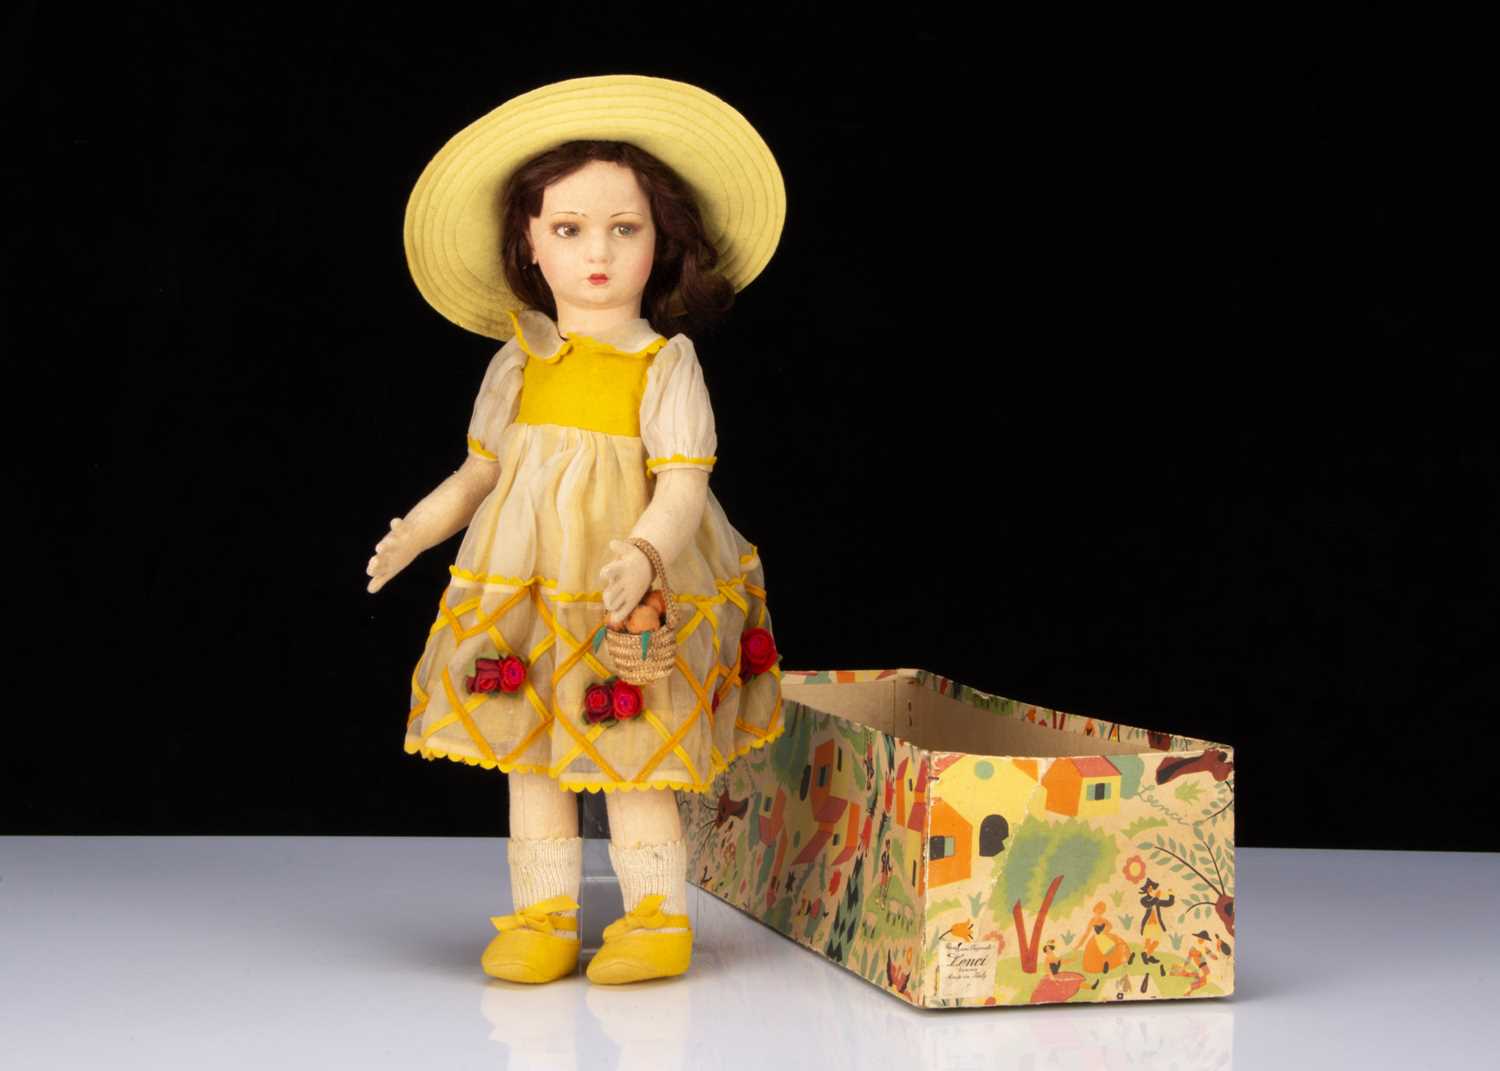 A 1930s Lenci girl doll,